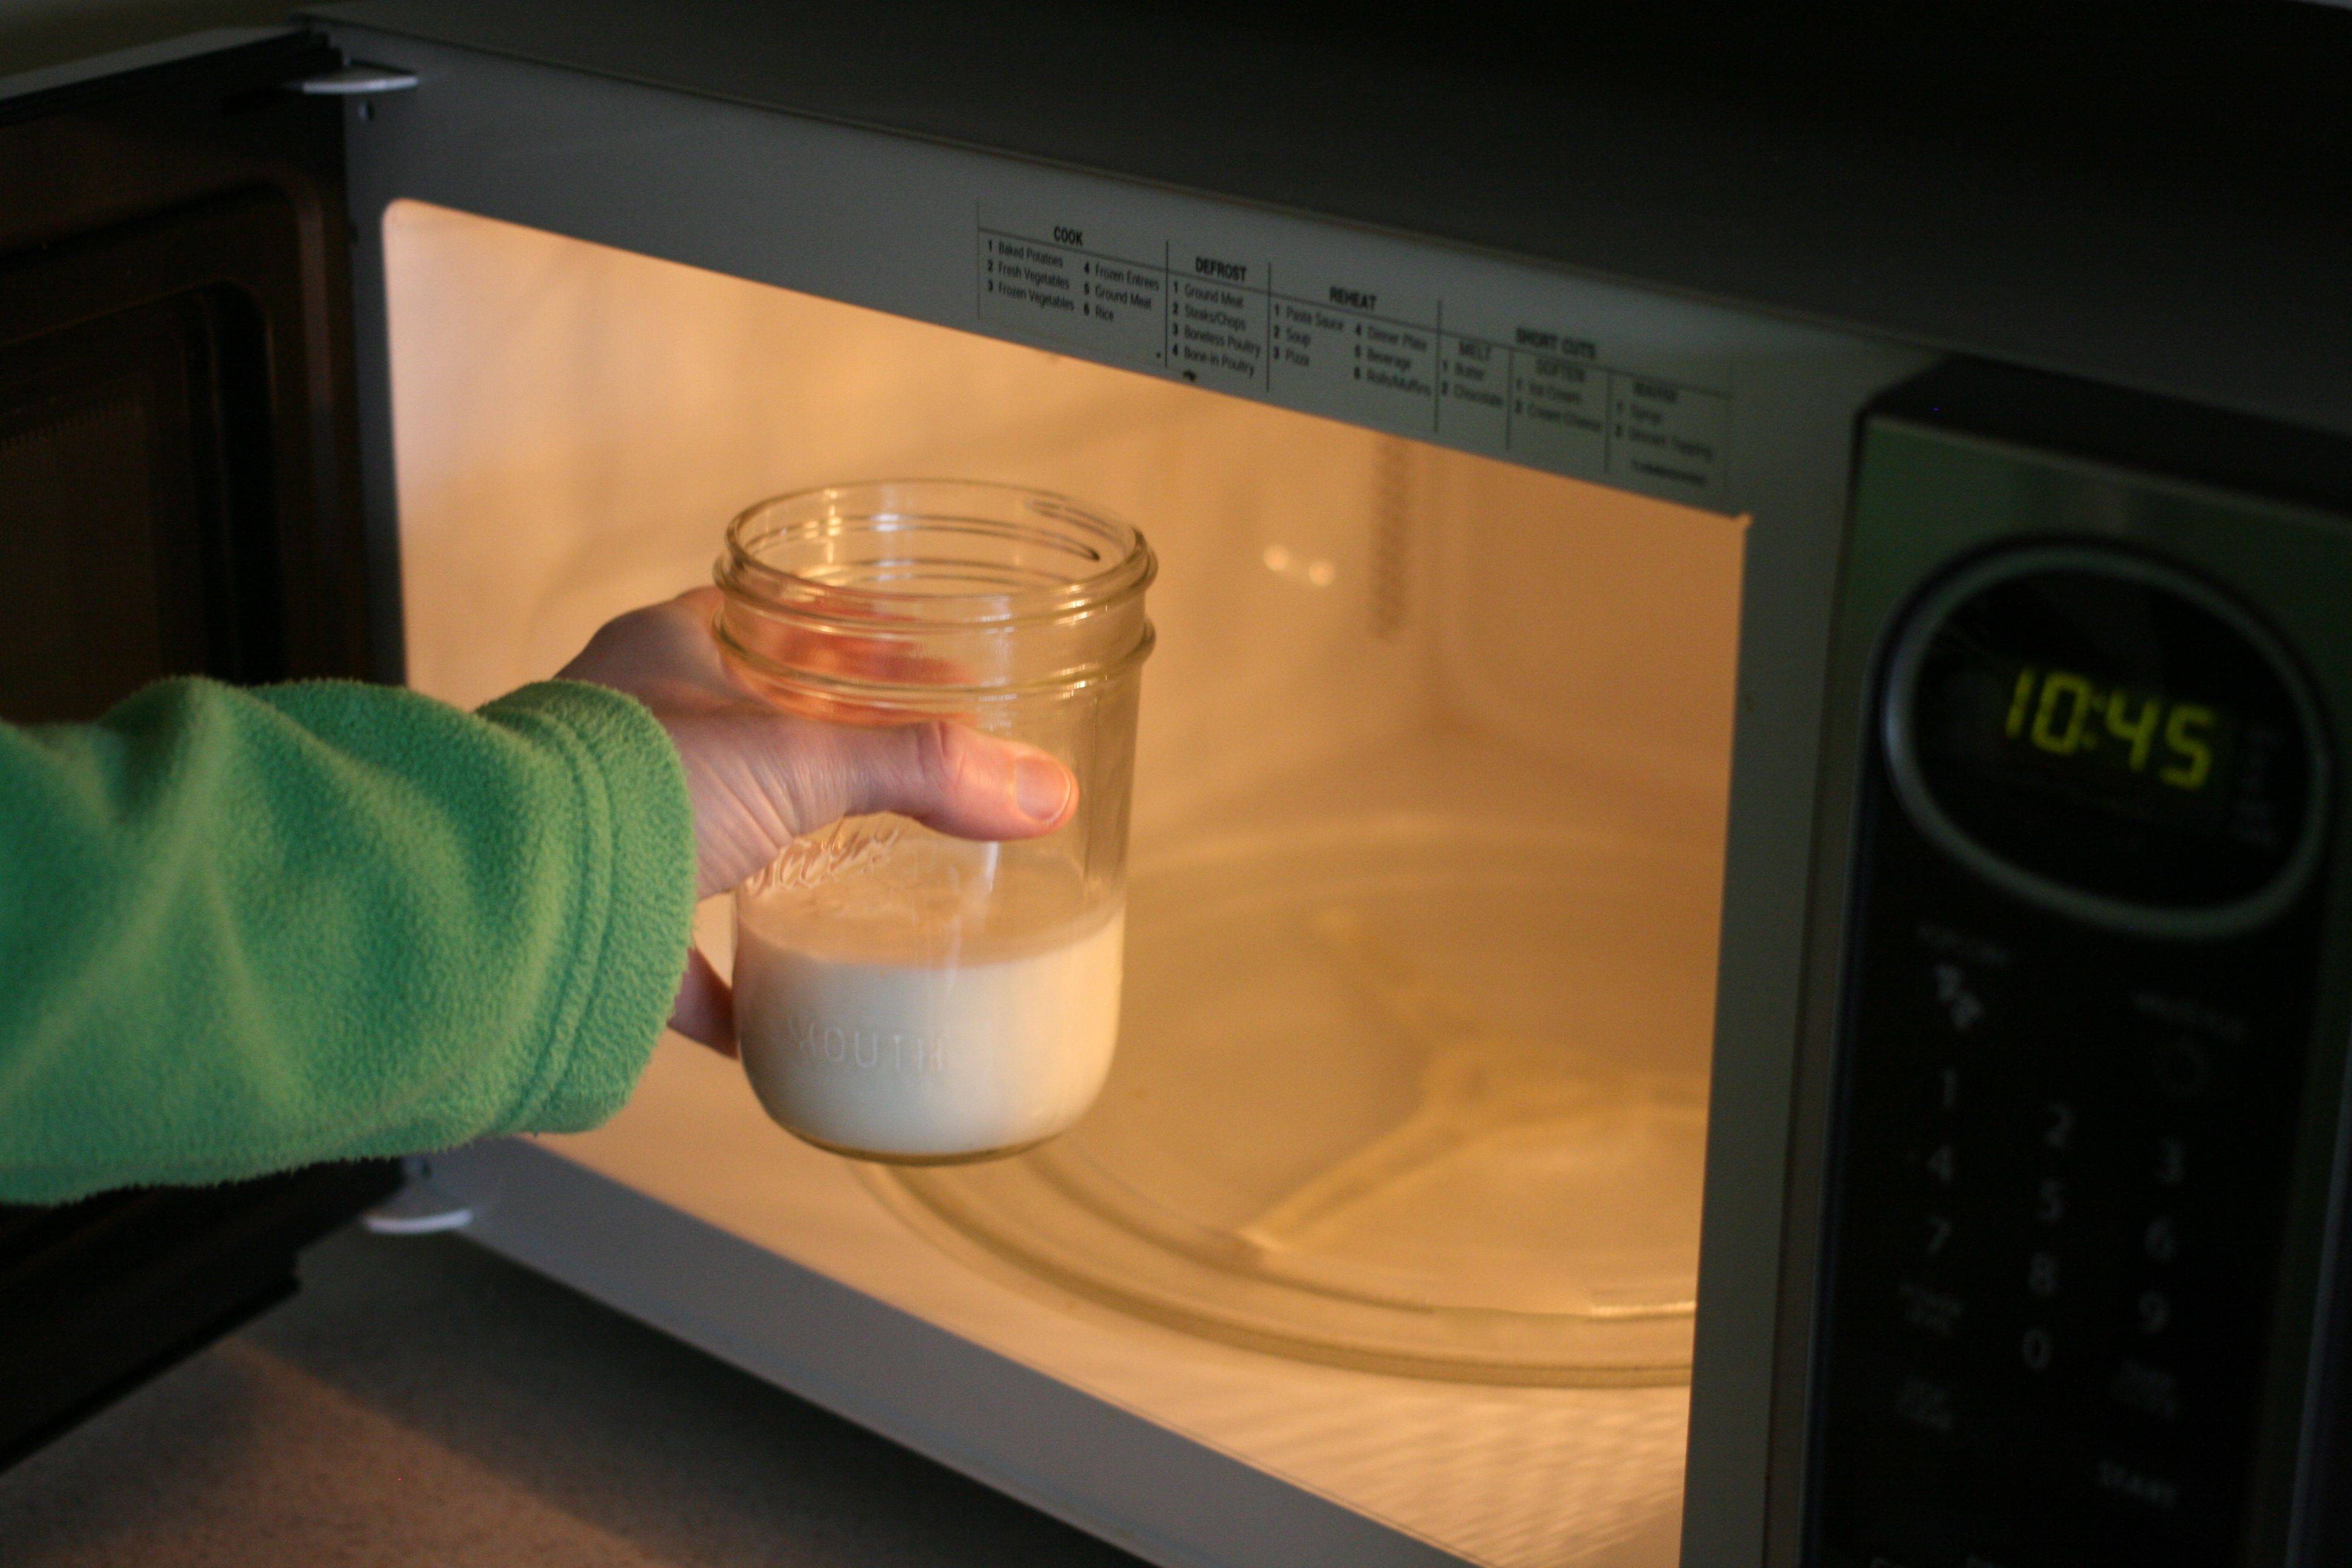 Как быстро нагреть молоко, сливки и другие продукты из холодильника до комнатной температуры: простые, но действительно работающие советы